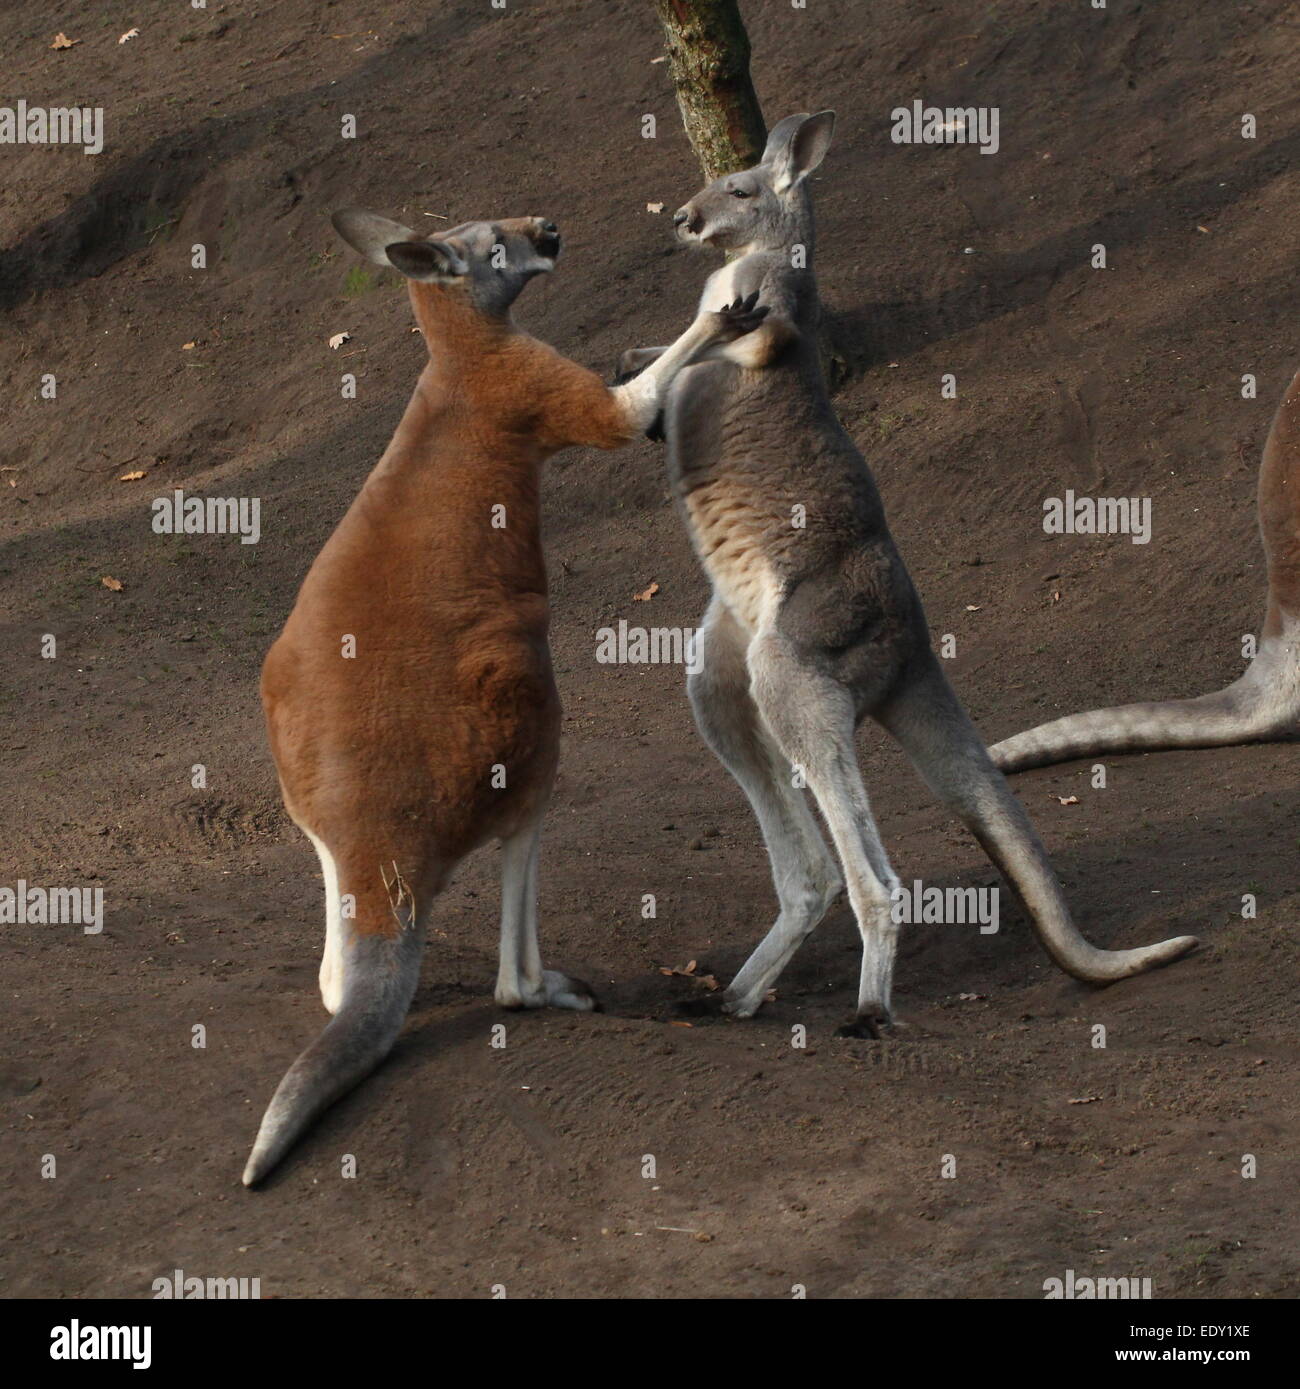 Two male Red Kangaroos (Macropus rufus) fighting at close range, Stock Photo